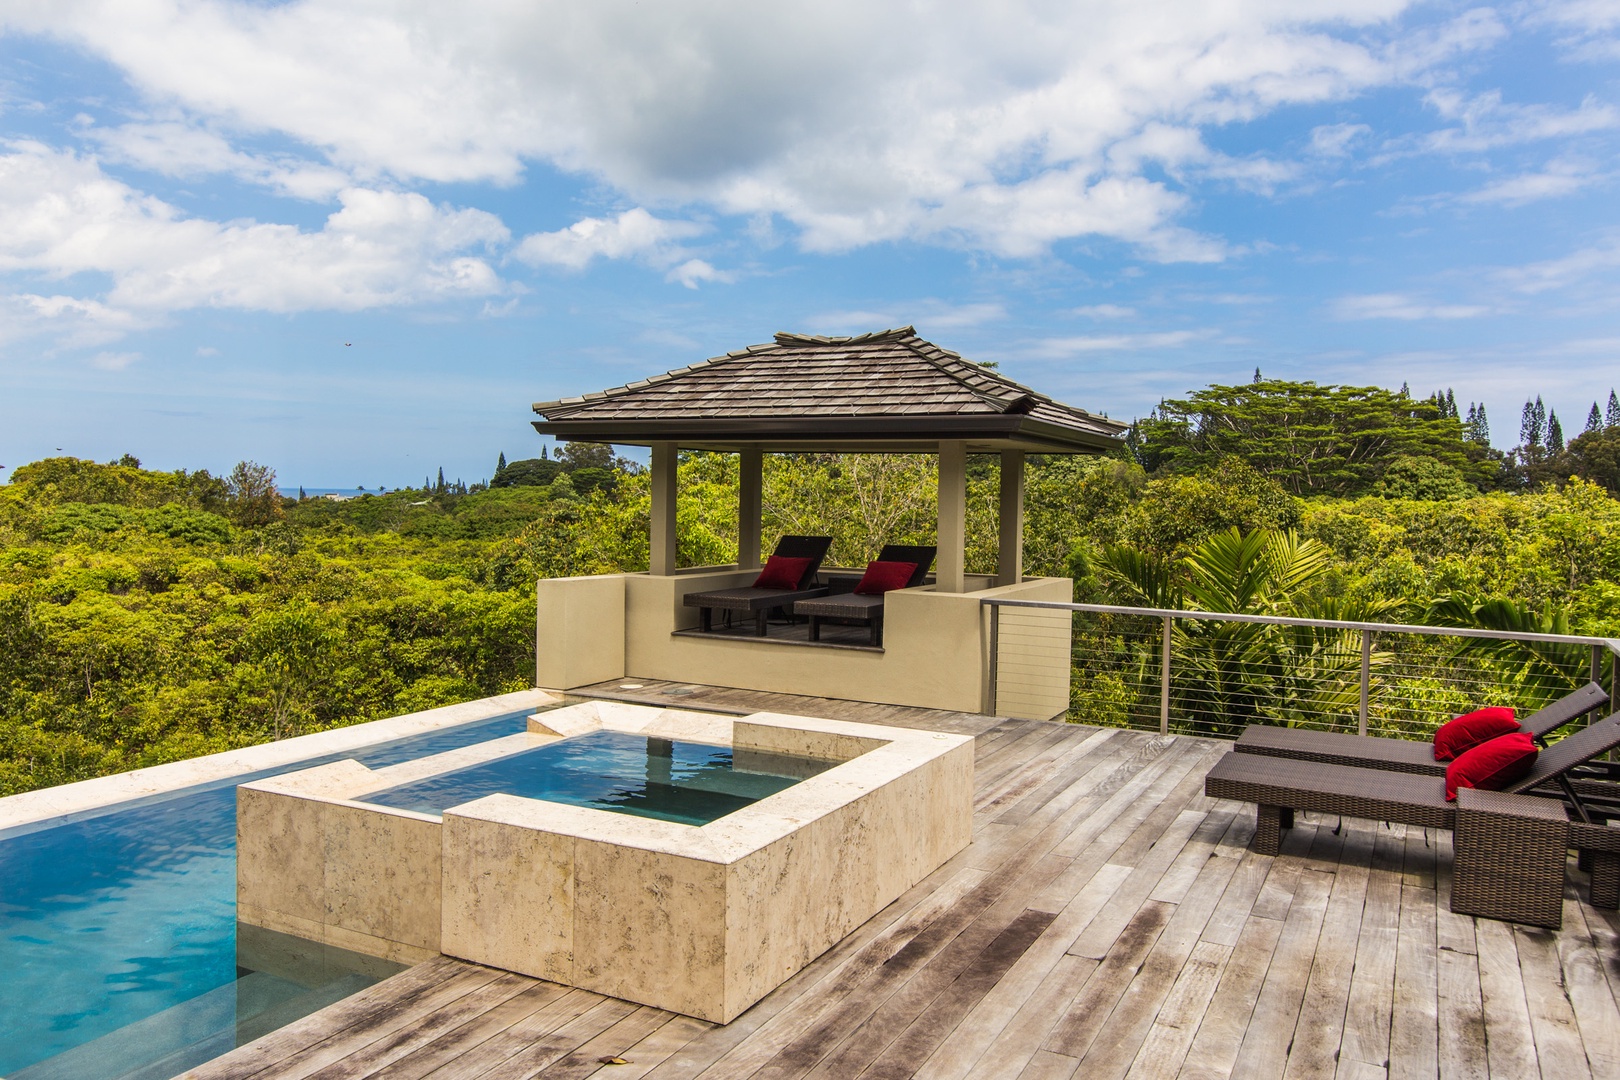 Princeville Vacation Rentals, Laulea Kailani Villa (KAUAI) - Pool and spa area.